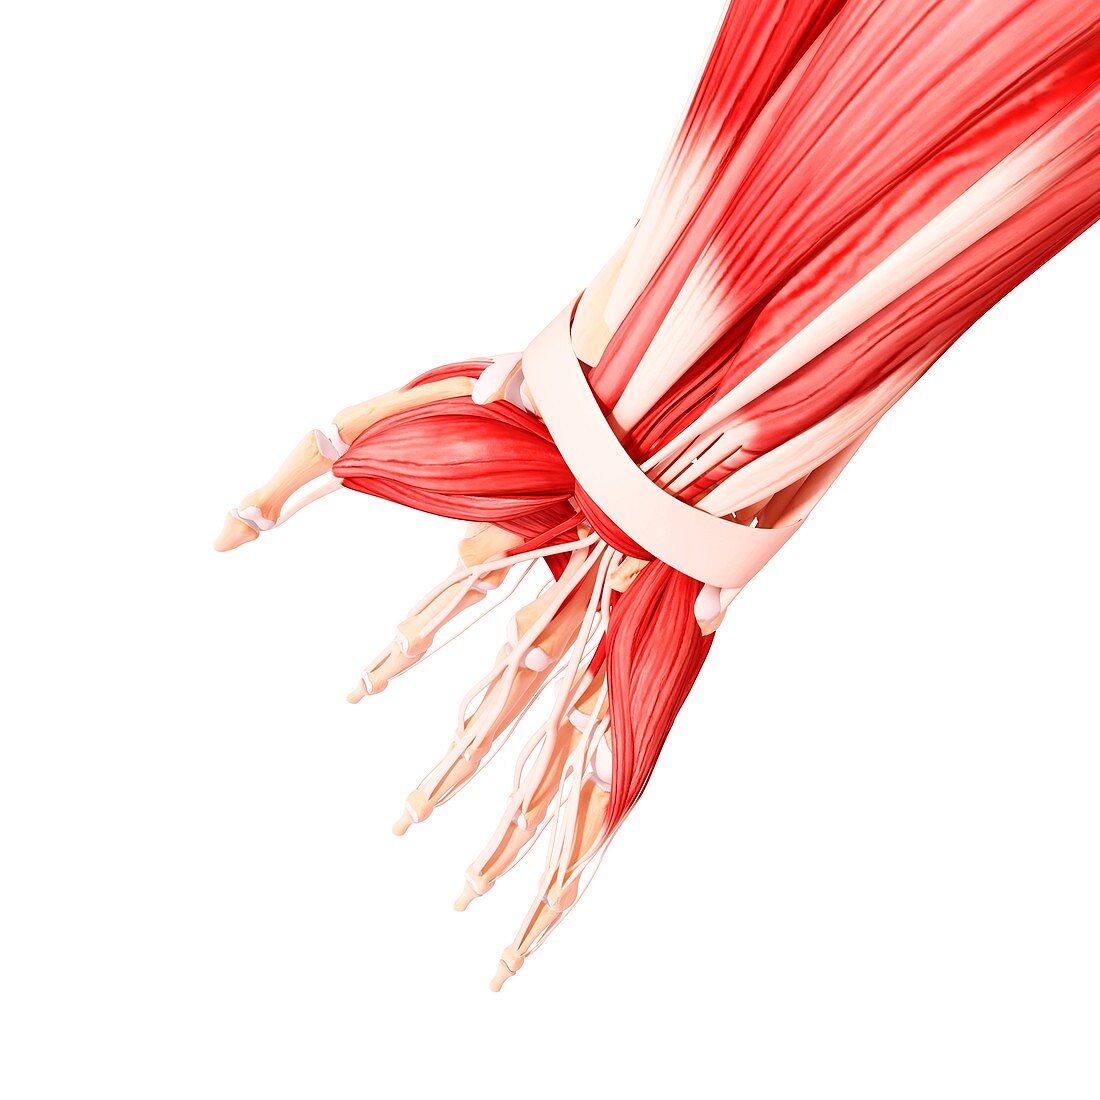 Human hand musculature,artwork